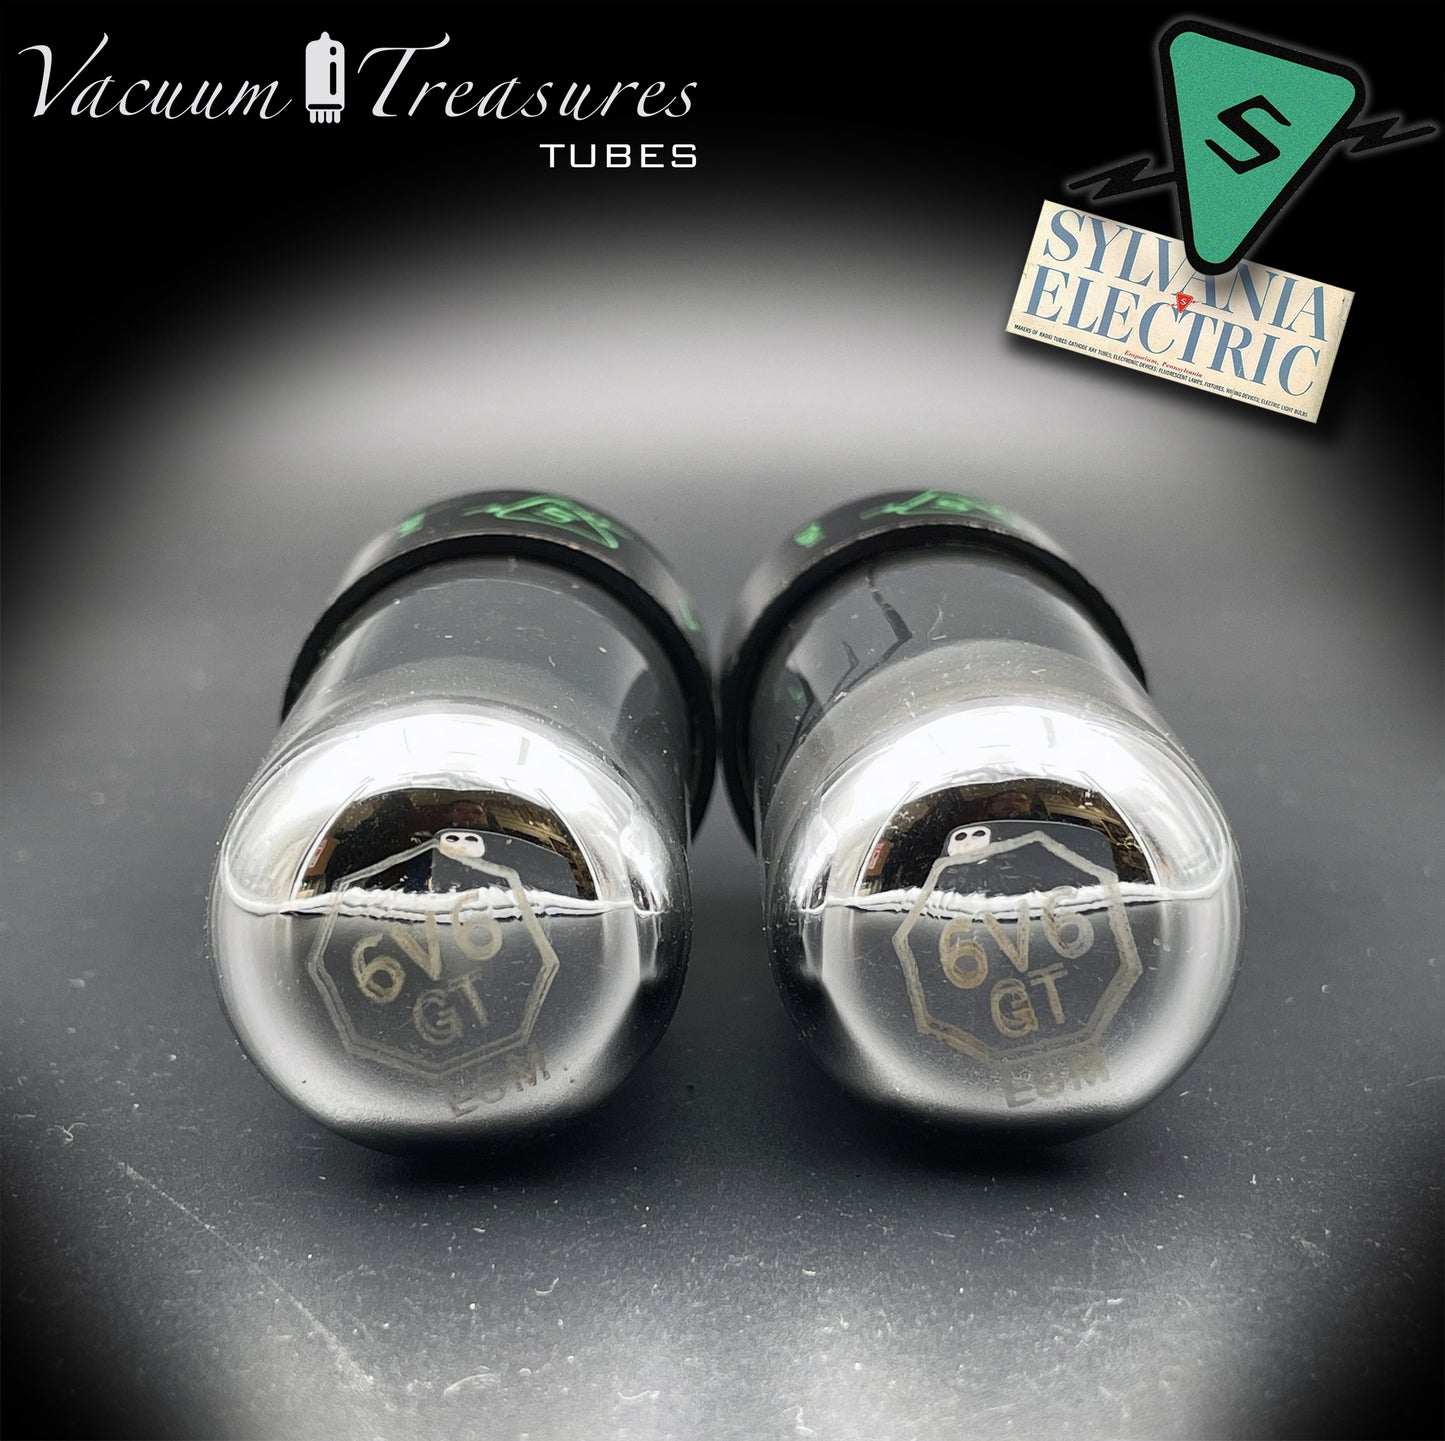 6V6GT SYLVANIA NOS Black Glass CHROME TOP Matched Tubes Made in USA '47